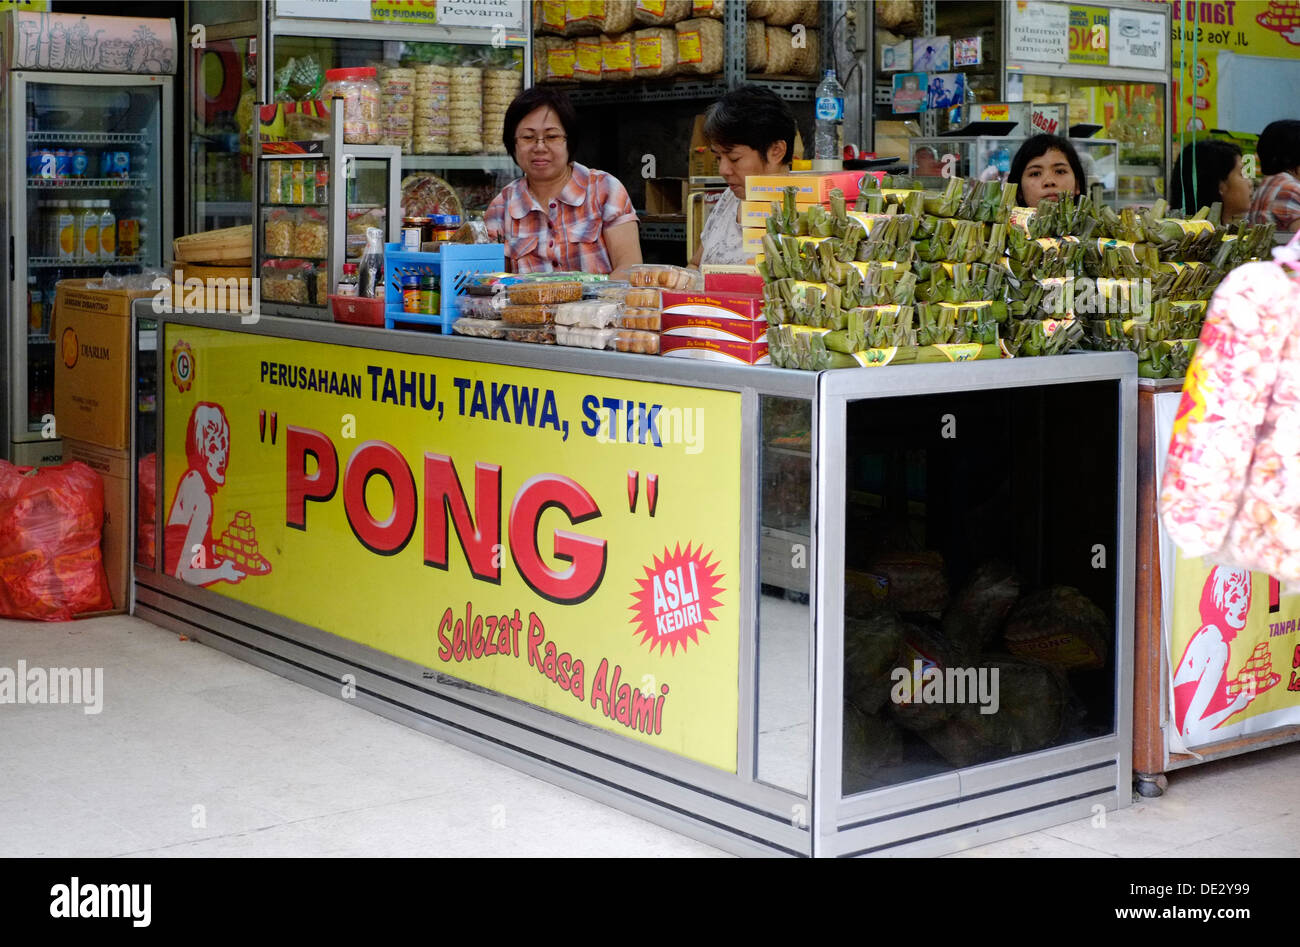 La tienda local de venta de tofu local con el nombre de la marca comercial de kediri pong java indonesia Foto de stock